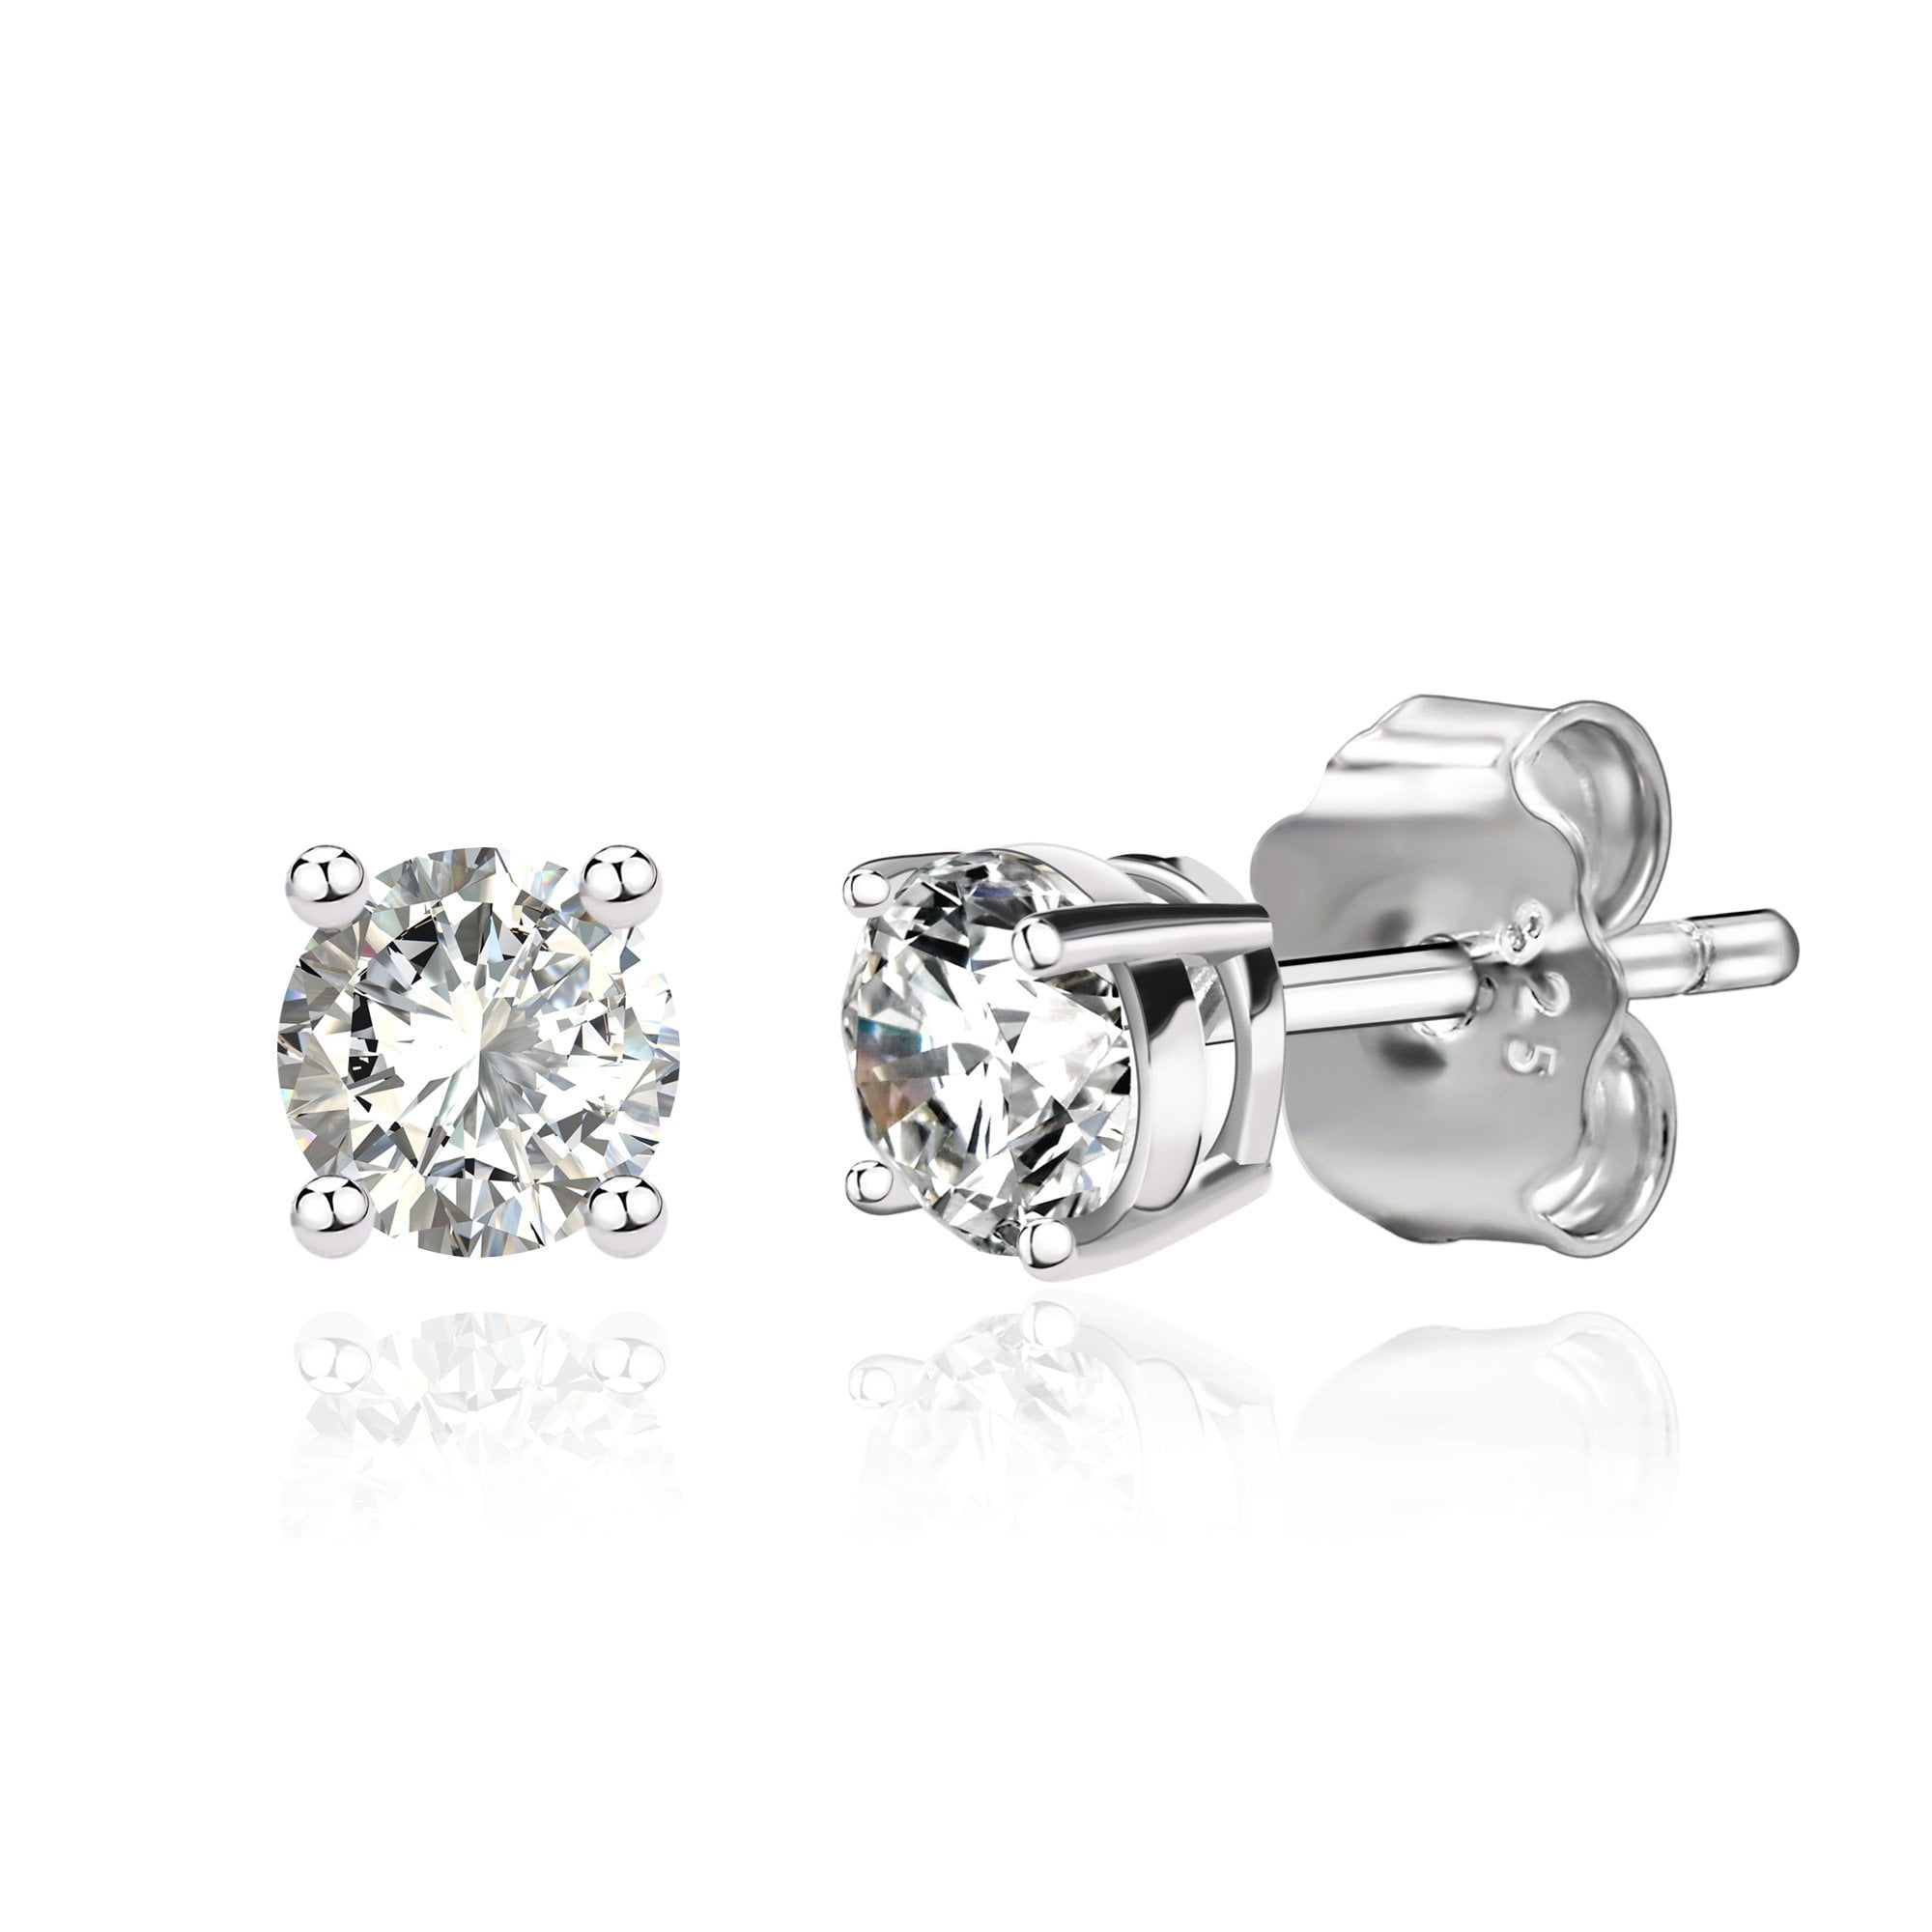 3/8 21ga Sterling Silver Ball Earring Post - Santa Fe Jewelers Supply :  Santa Fe Jewelers Supply